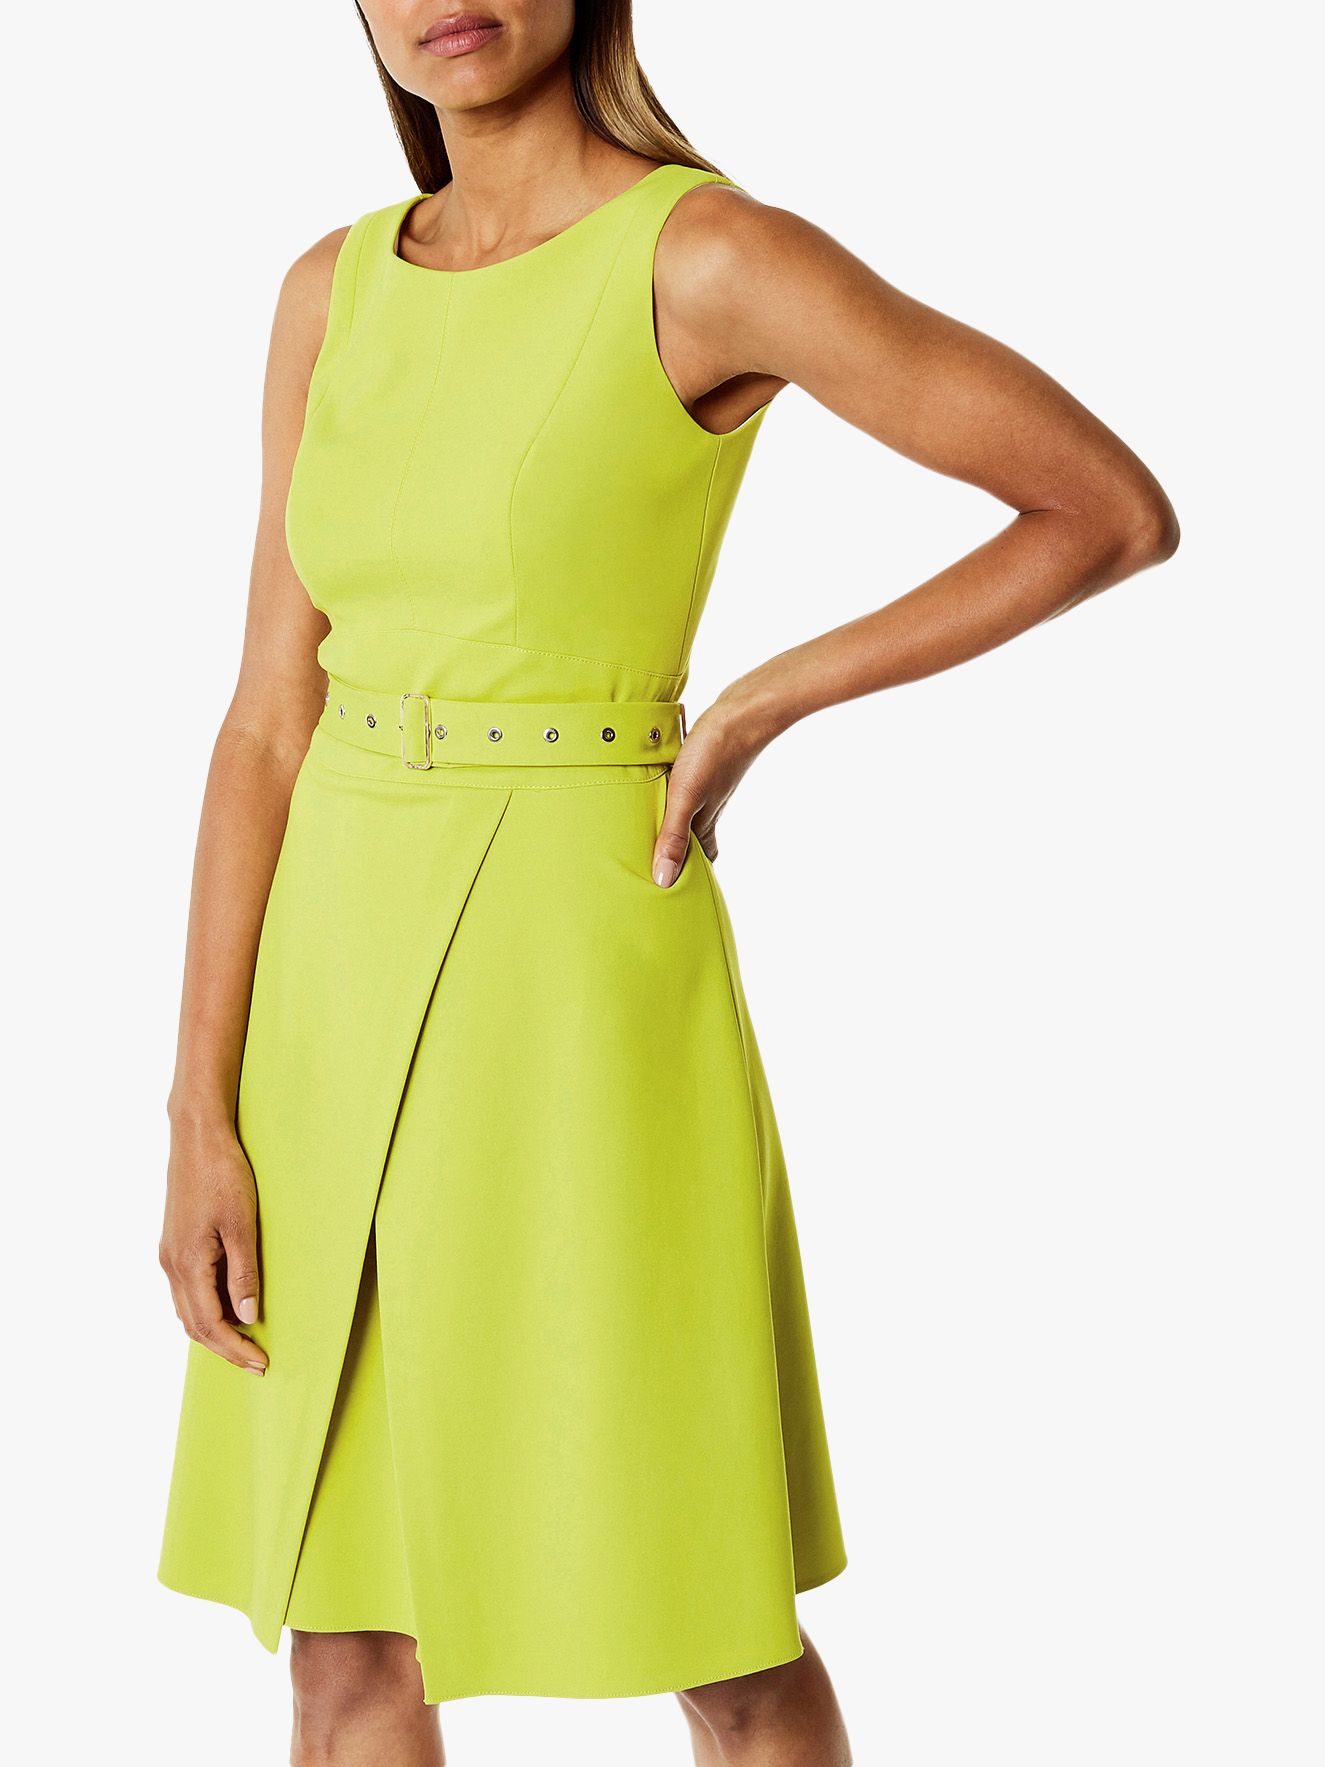 Karen Millen Wrap Mini Dress Lime At John Lewis And Partners